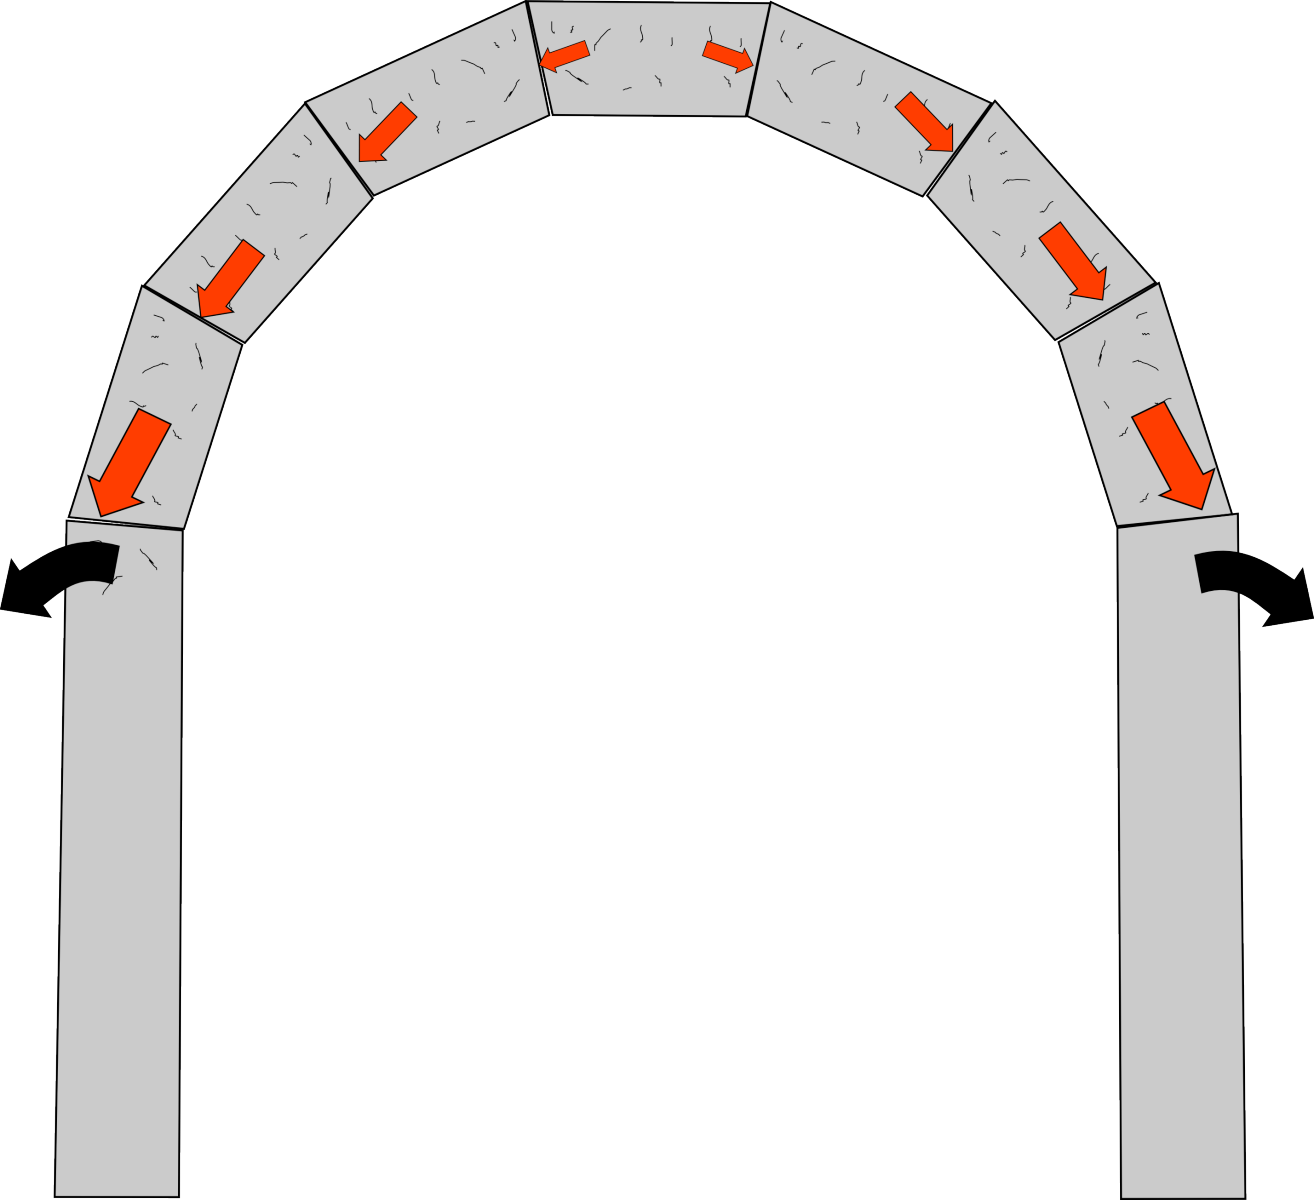 Arch on pillars